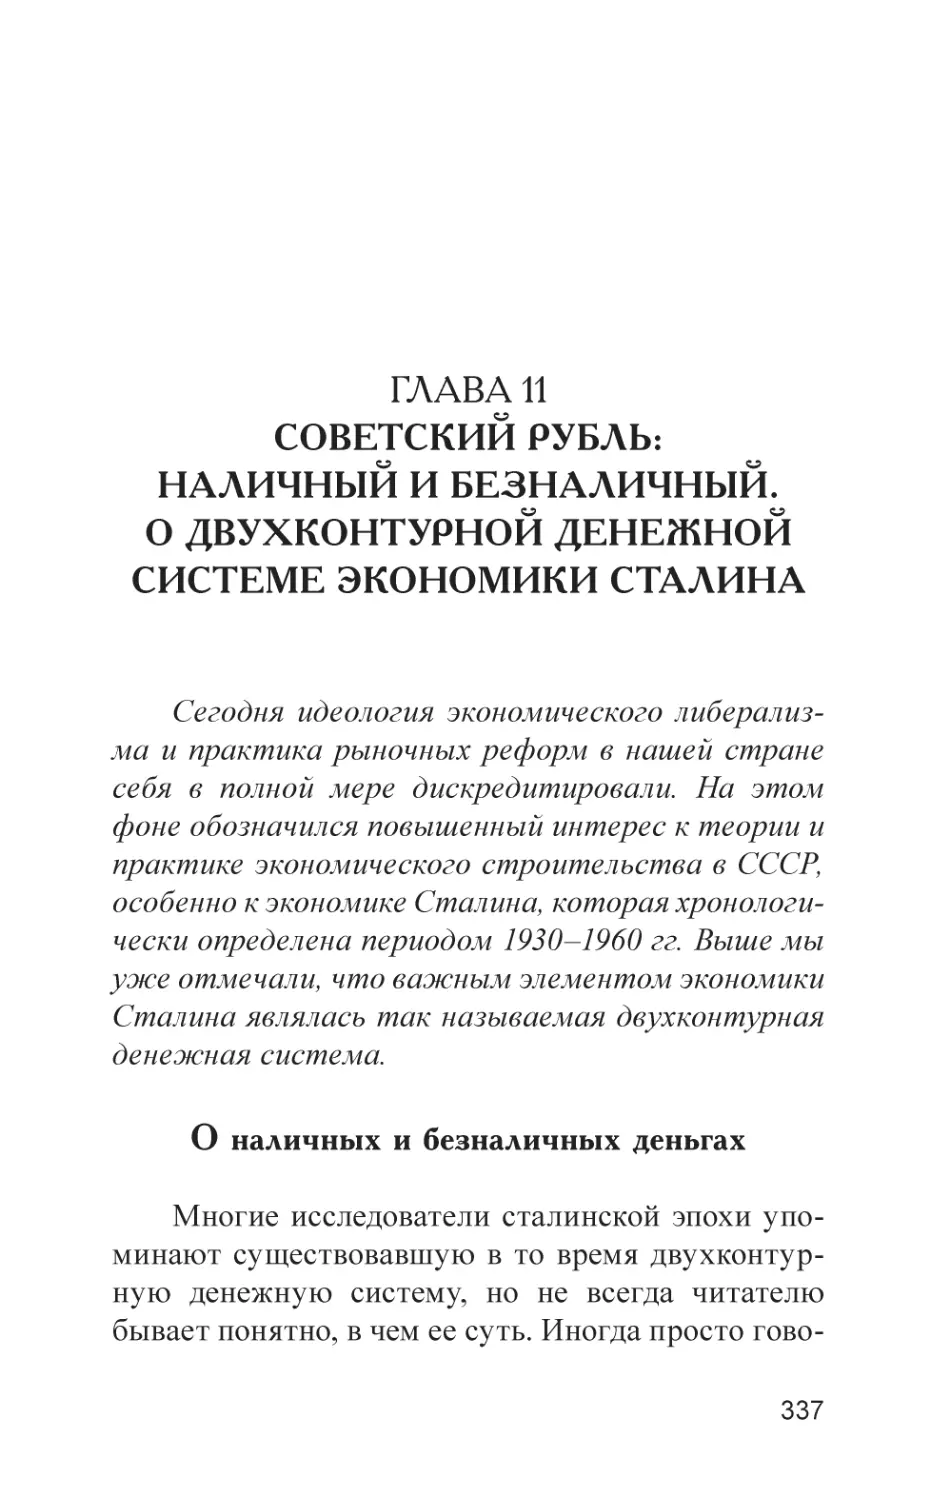 Глава 11. Советский рубль
О наличных и безналичных деньгах